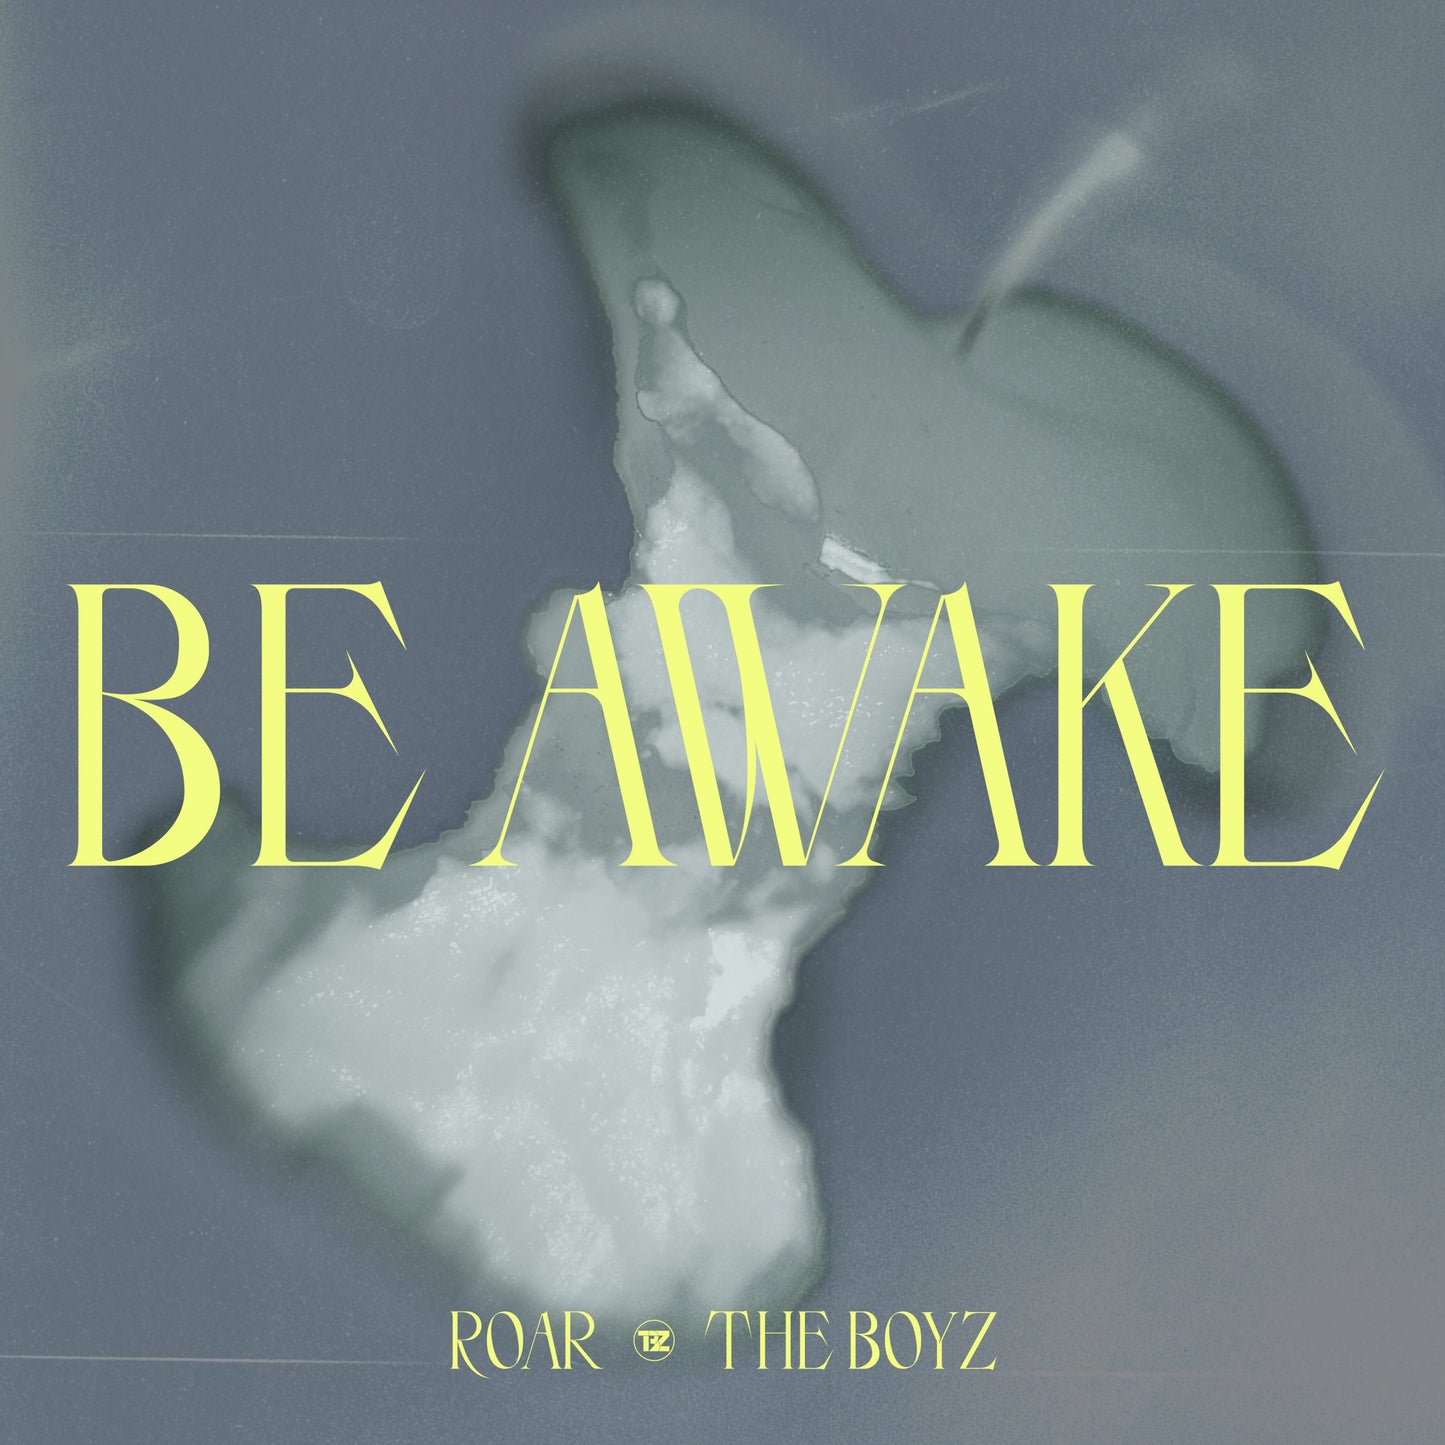 The Boyz - Be Awake (ROAR)